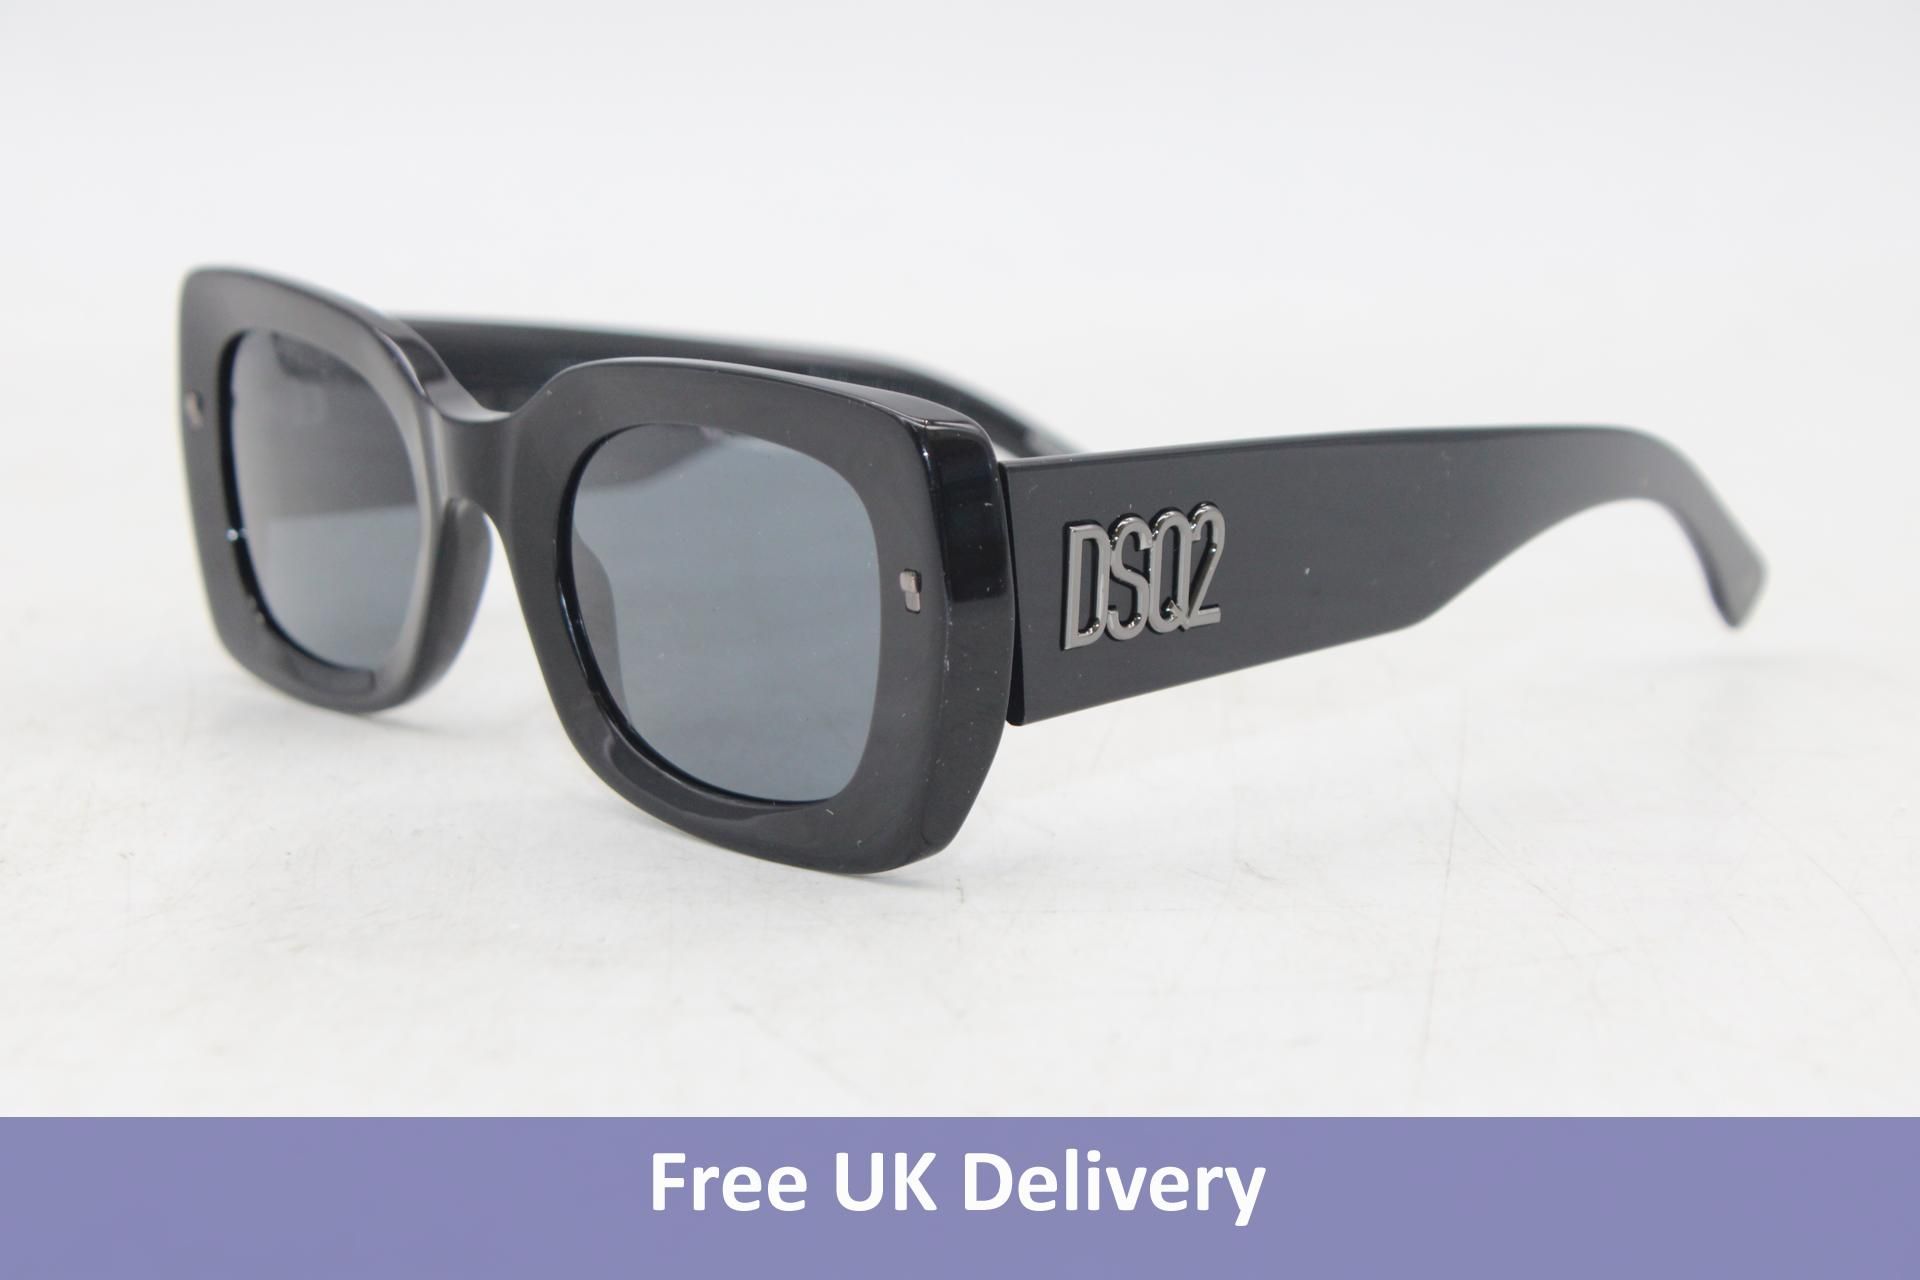 DSquared2 Refined Sunglasses, Black, No Box